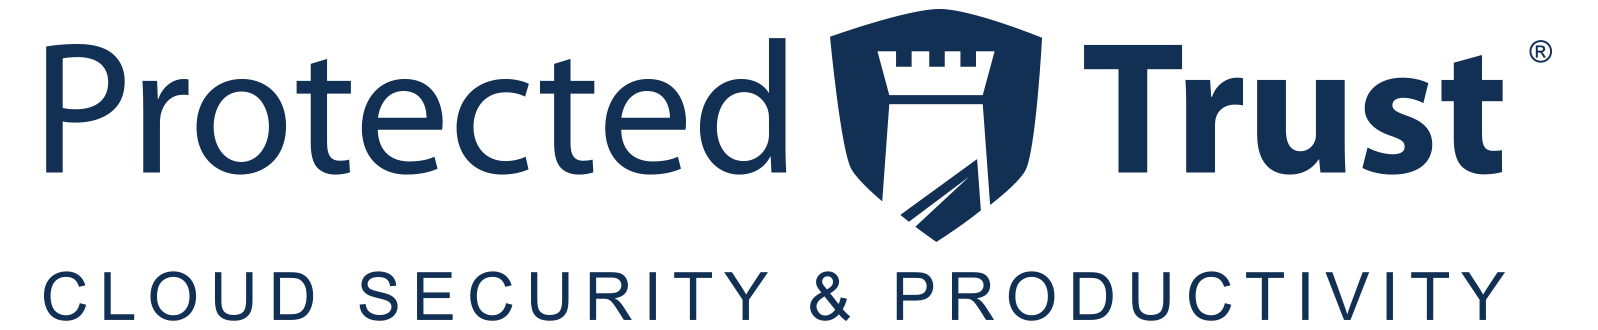 pt-logo-blue